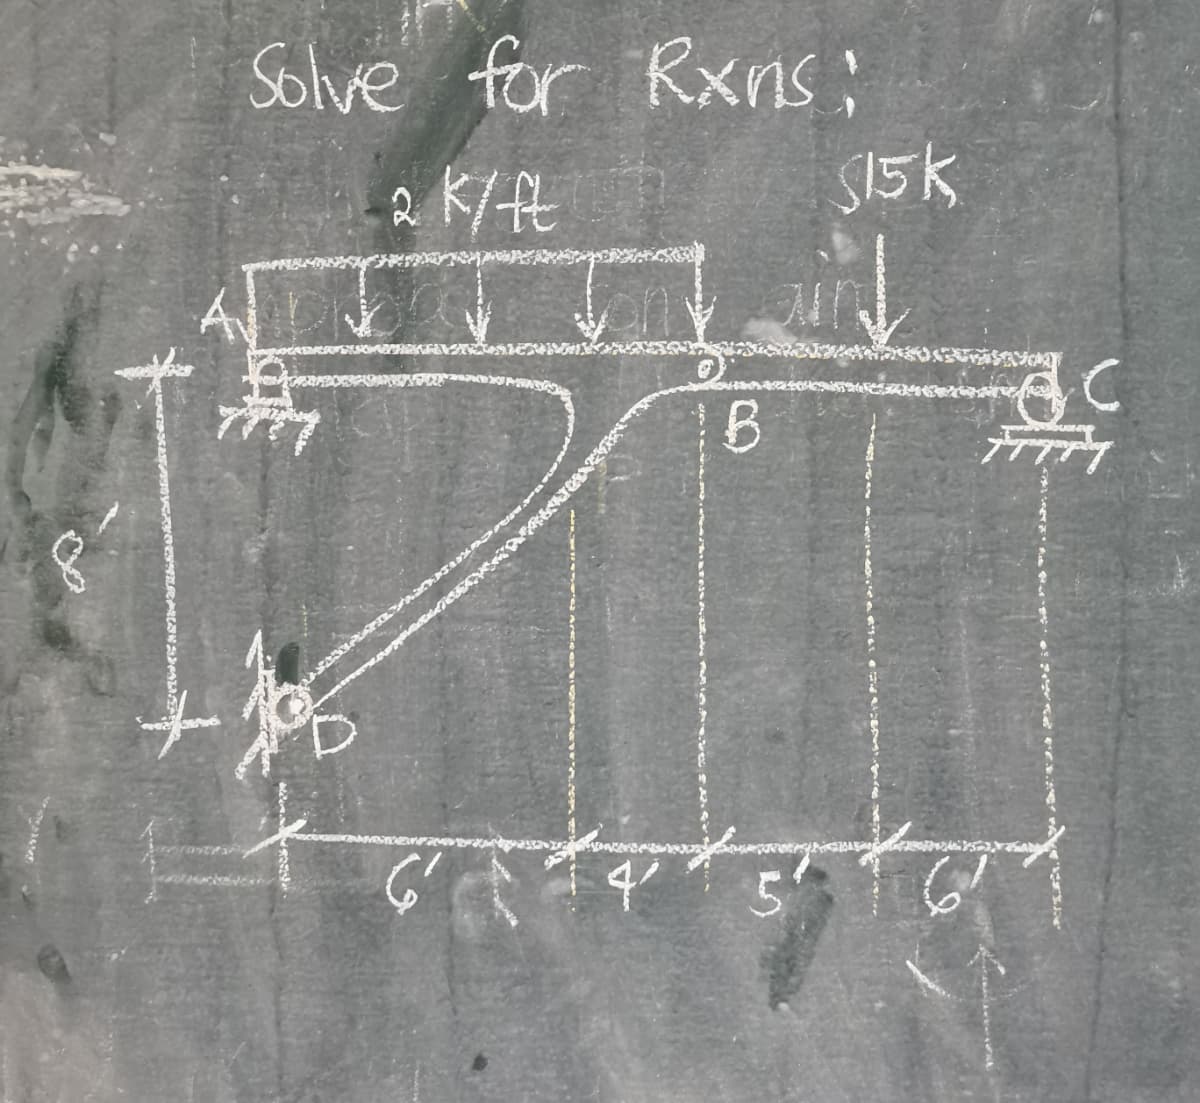 +
Solve for Rxns;
2 K/ ft
165
6'
1B
S15K
4 +5² +6²